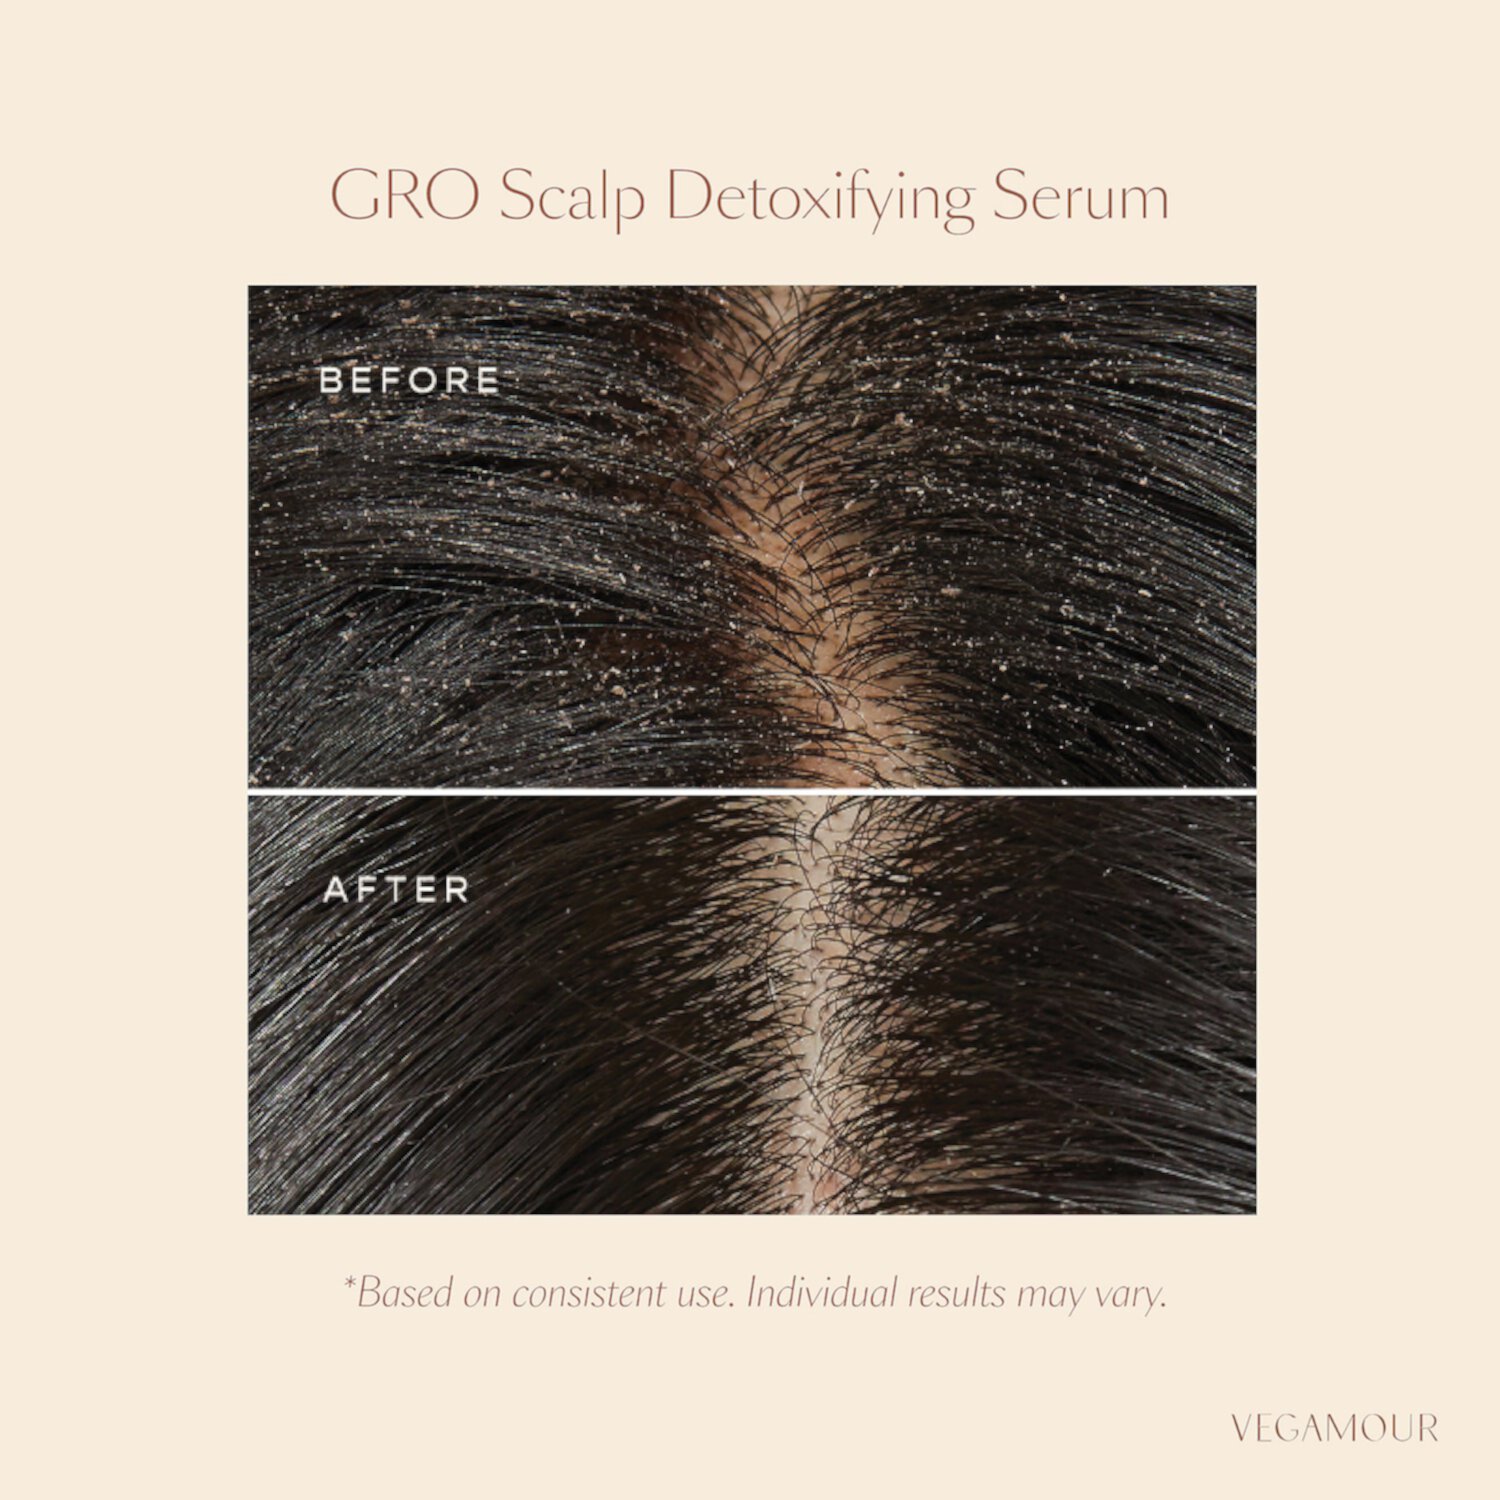 GRO Scalp Detox Очищающее средство для сухой, шелушащейся и жирной кожи головы Vegamour